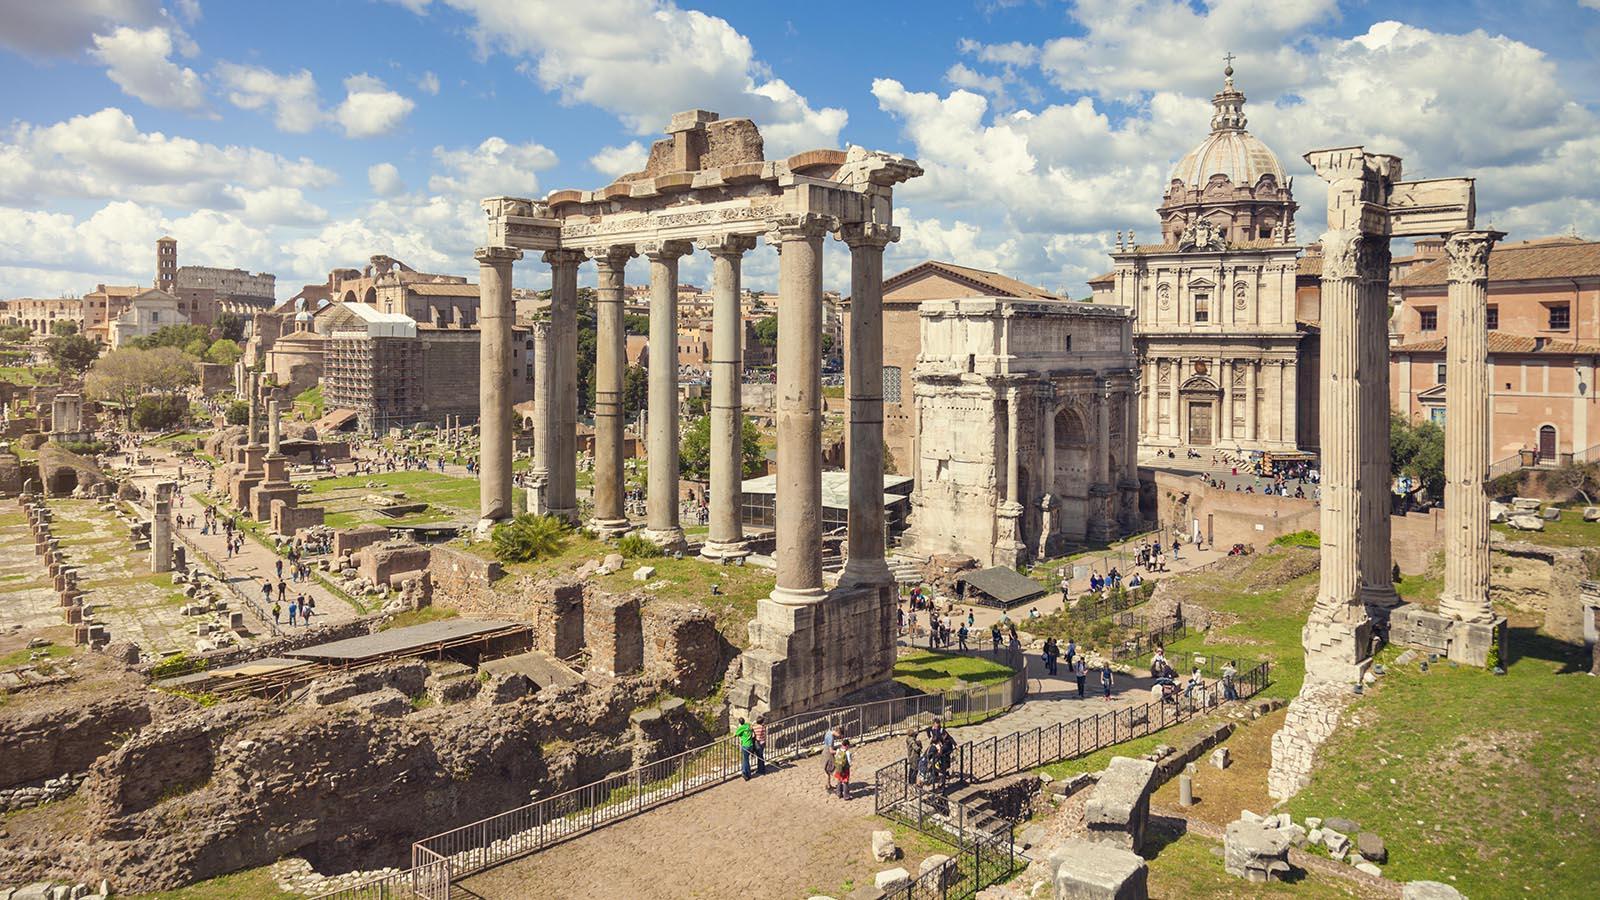 Forum Romanum in Rome, Italy.